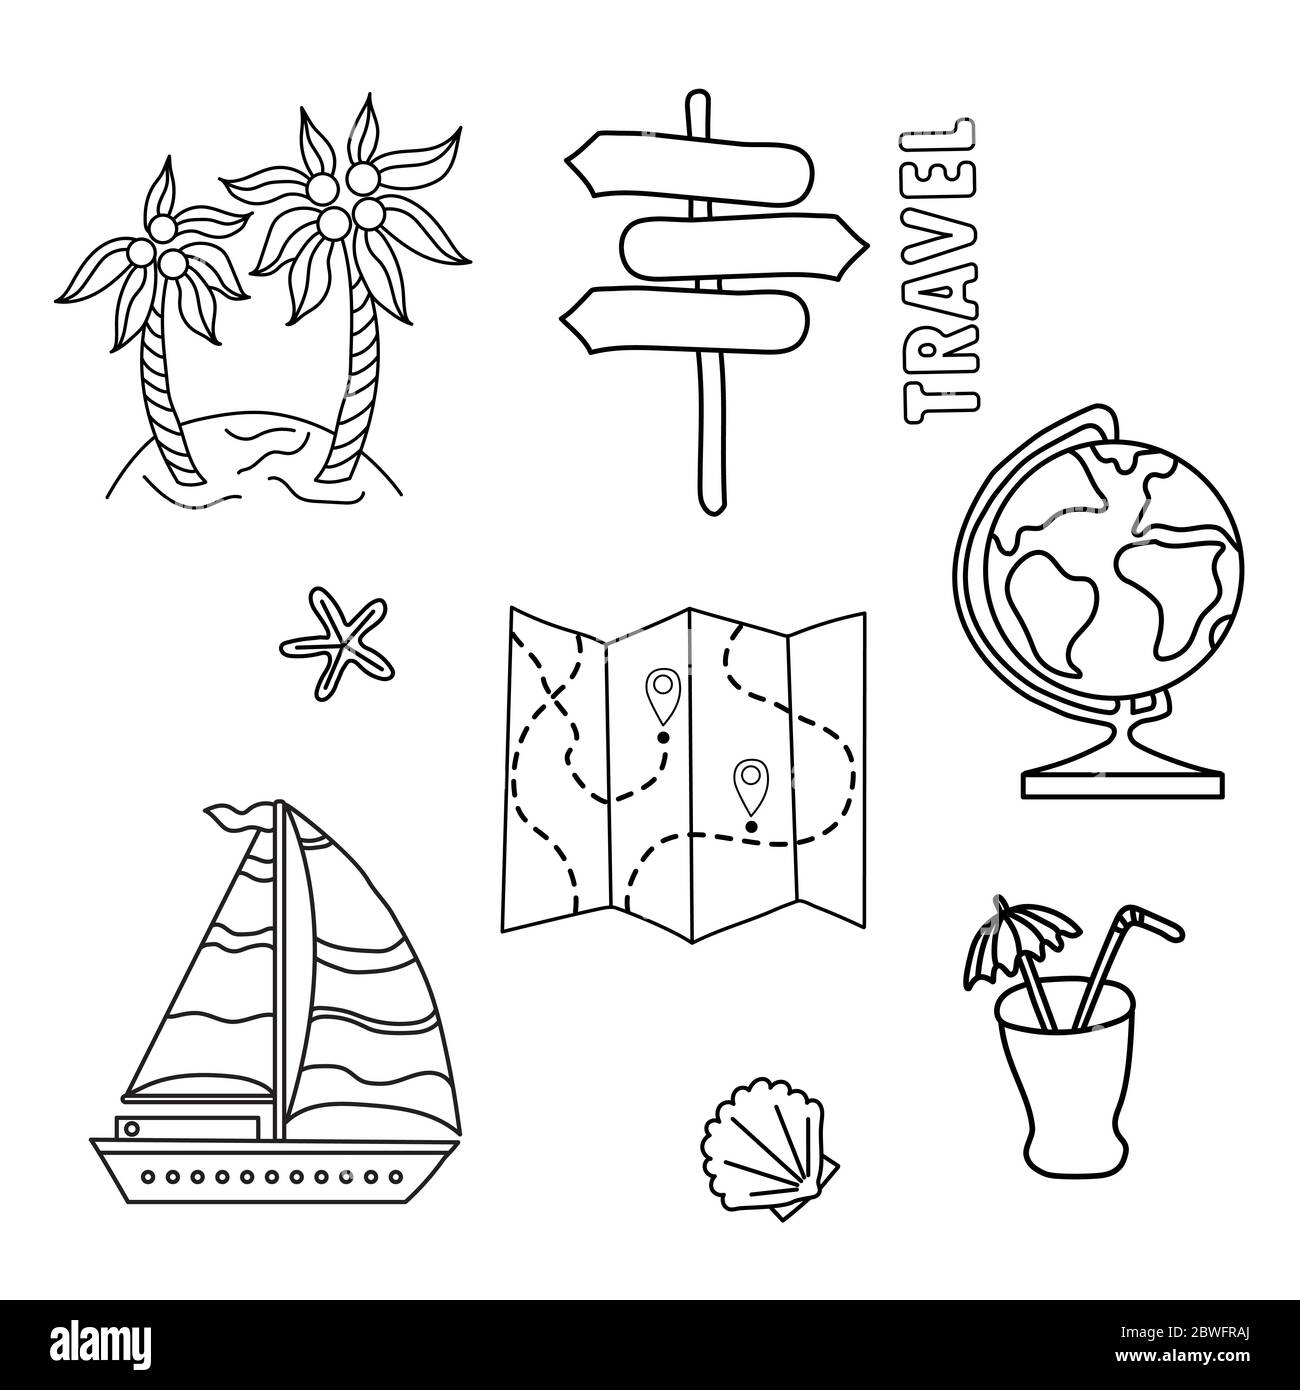 Illustrazione per il design lifestyle. Set di viaggi di doodles. Collezione di simboli di contorno. Globo, cockleshell, navigazione, cocktail Illustrazione Vettoriale